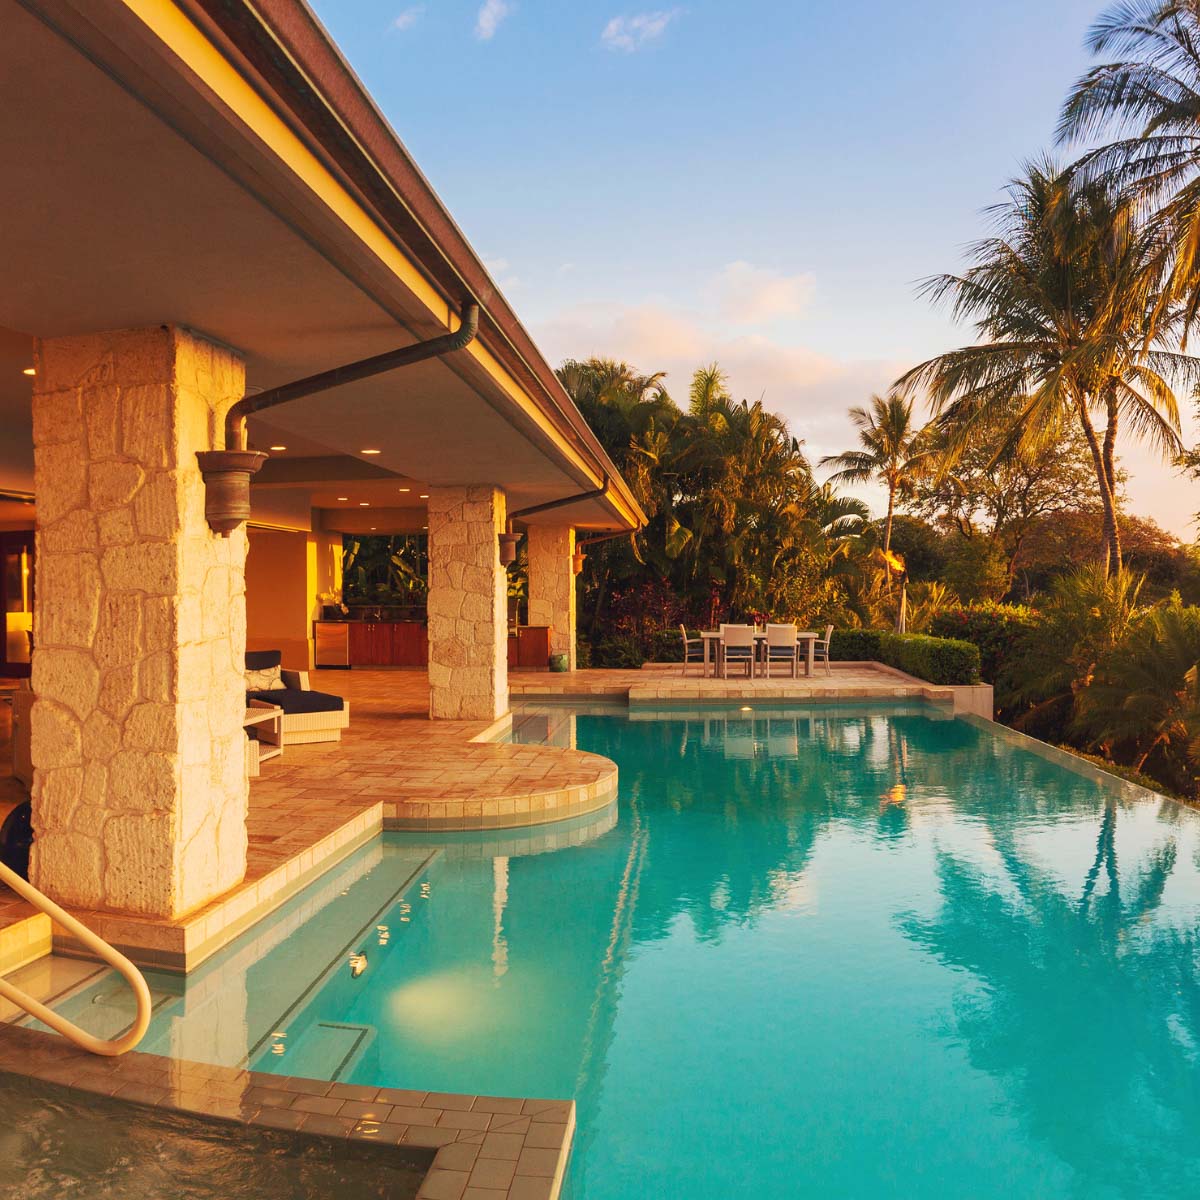 villa mit pool erstellt von bemotion 360 fotografie immobilie